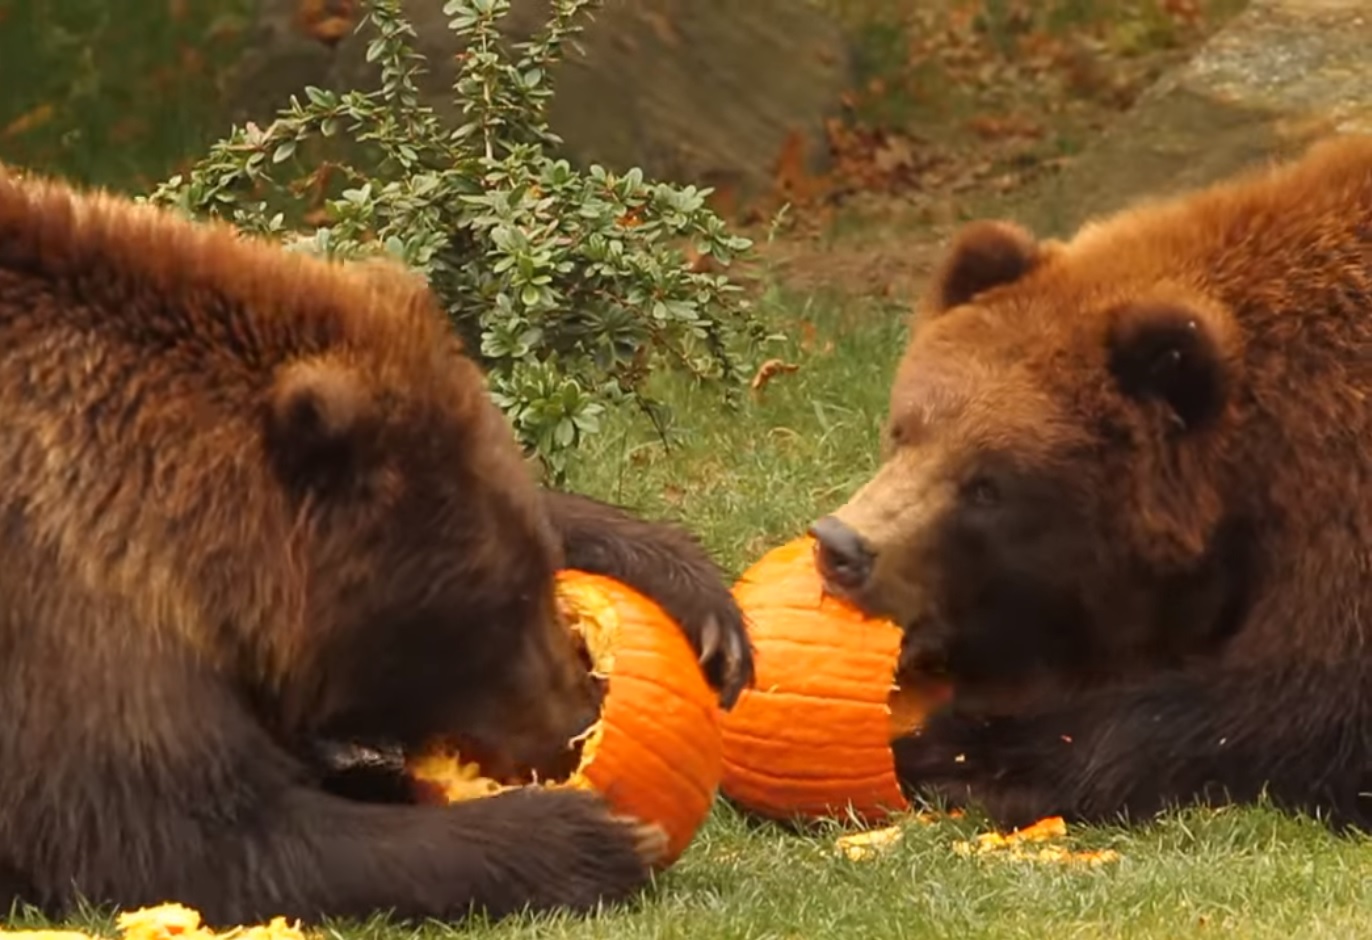 Massachusetts Bear Spotted Eating Pumpkins | OutdoorHub